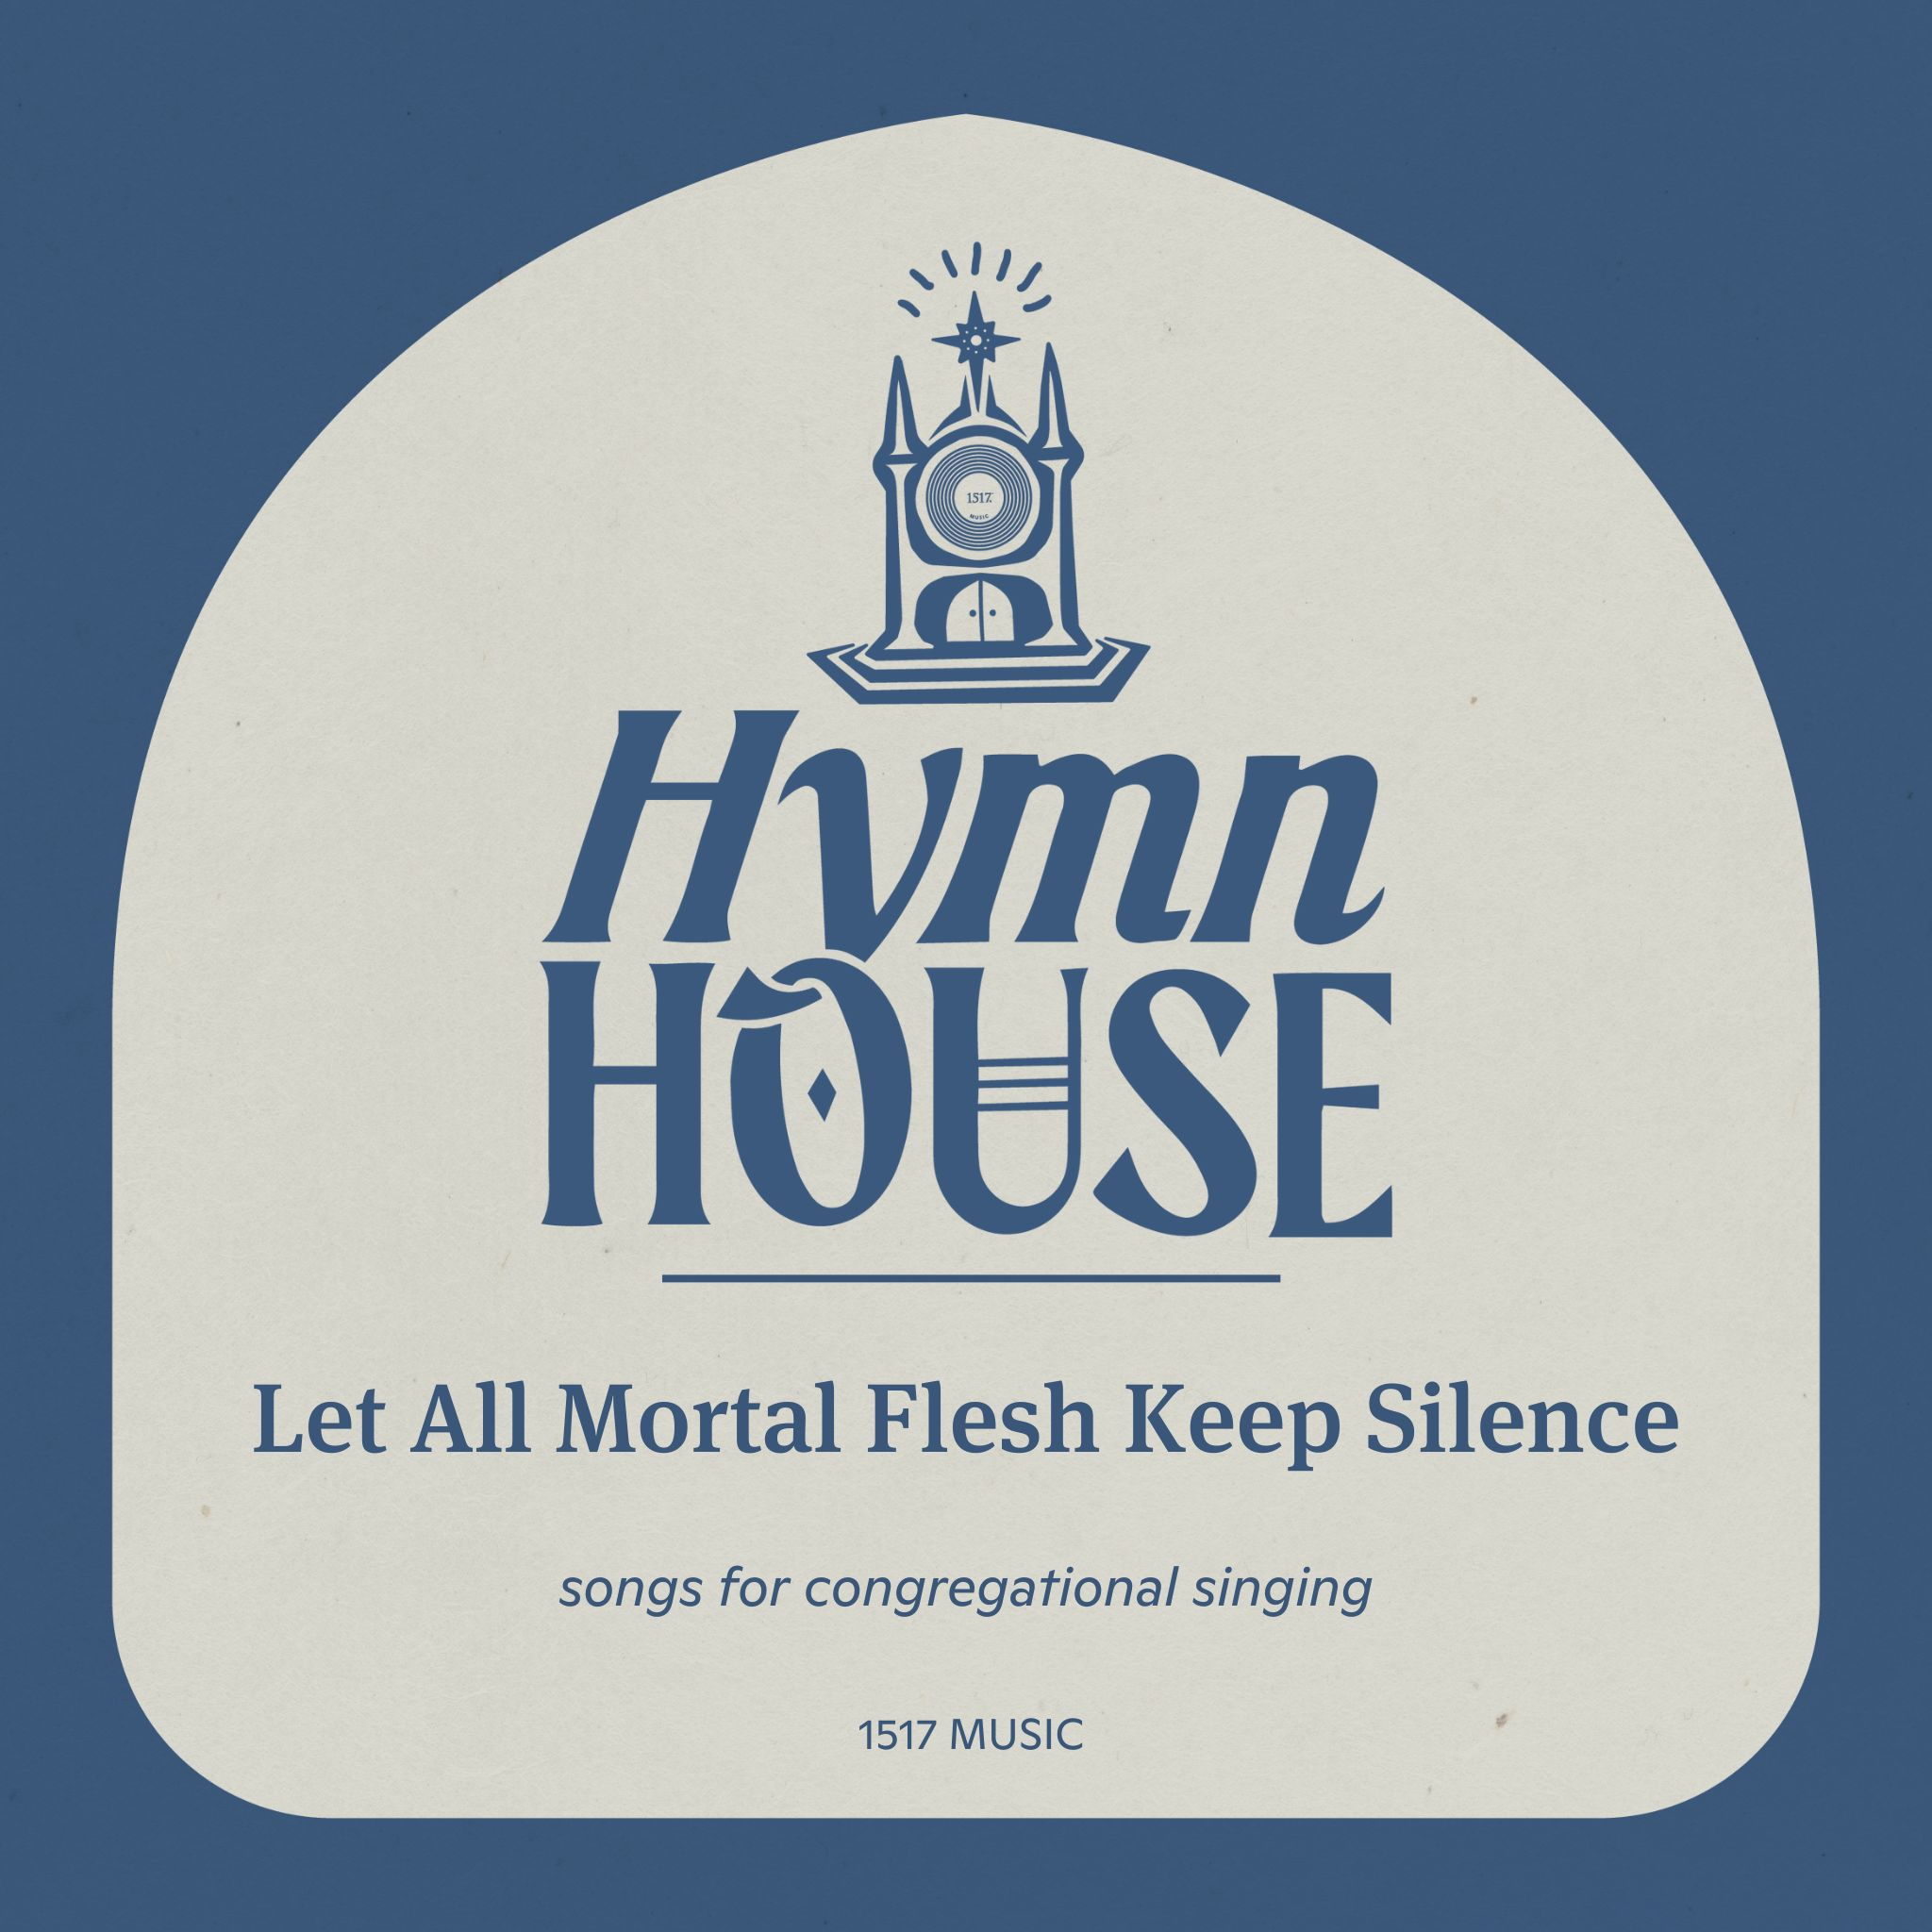 Let All Mortal Flesh Keep Silence (Hymn House)